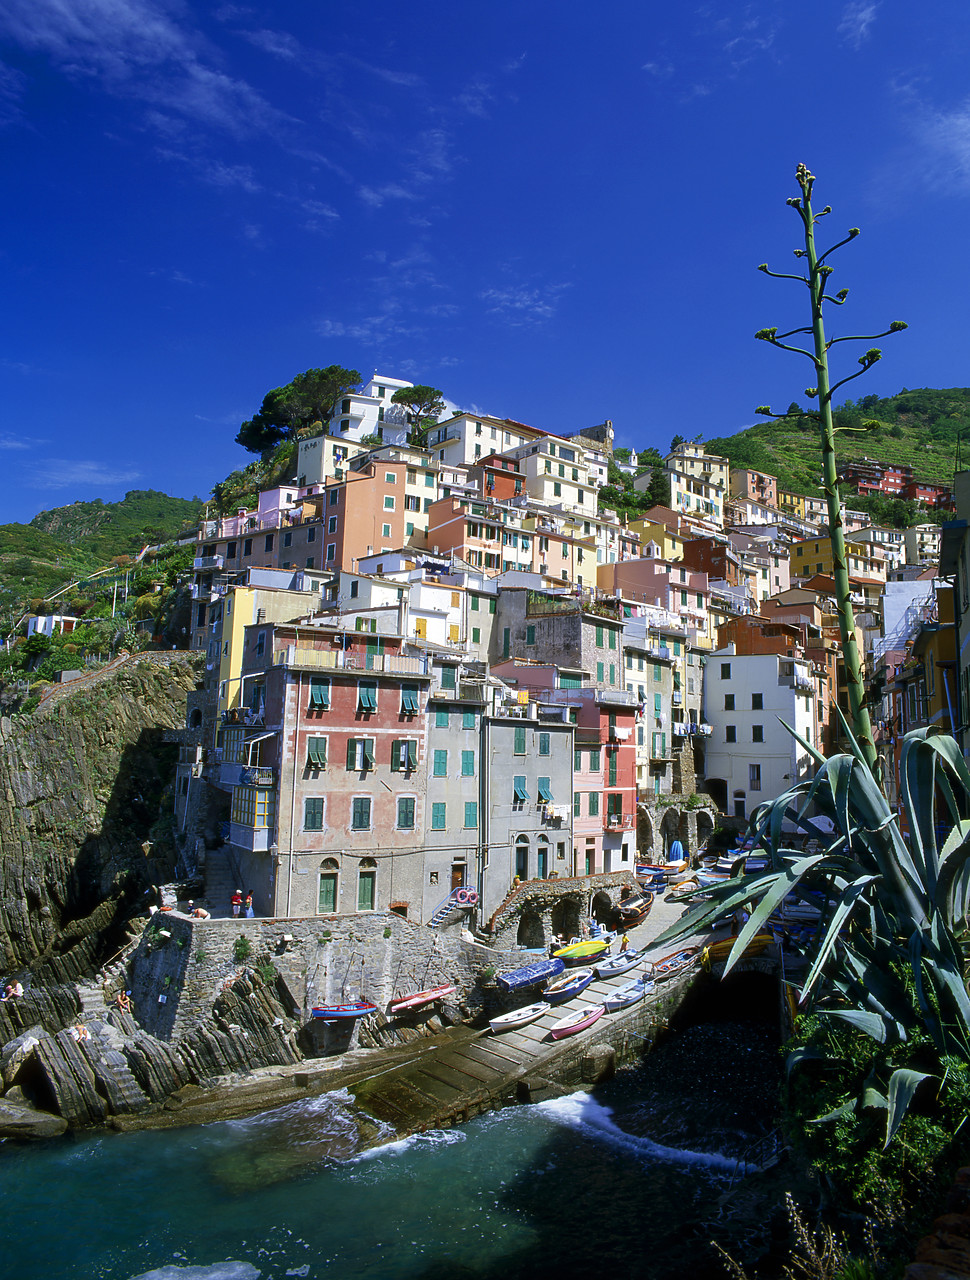 #020175-2 - Riomaggiore, Cinque Terre, Liguria, Italy